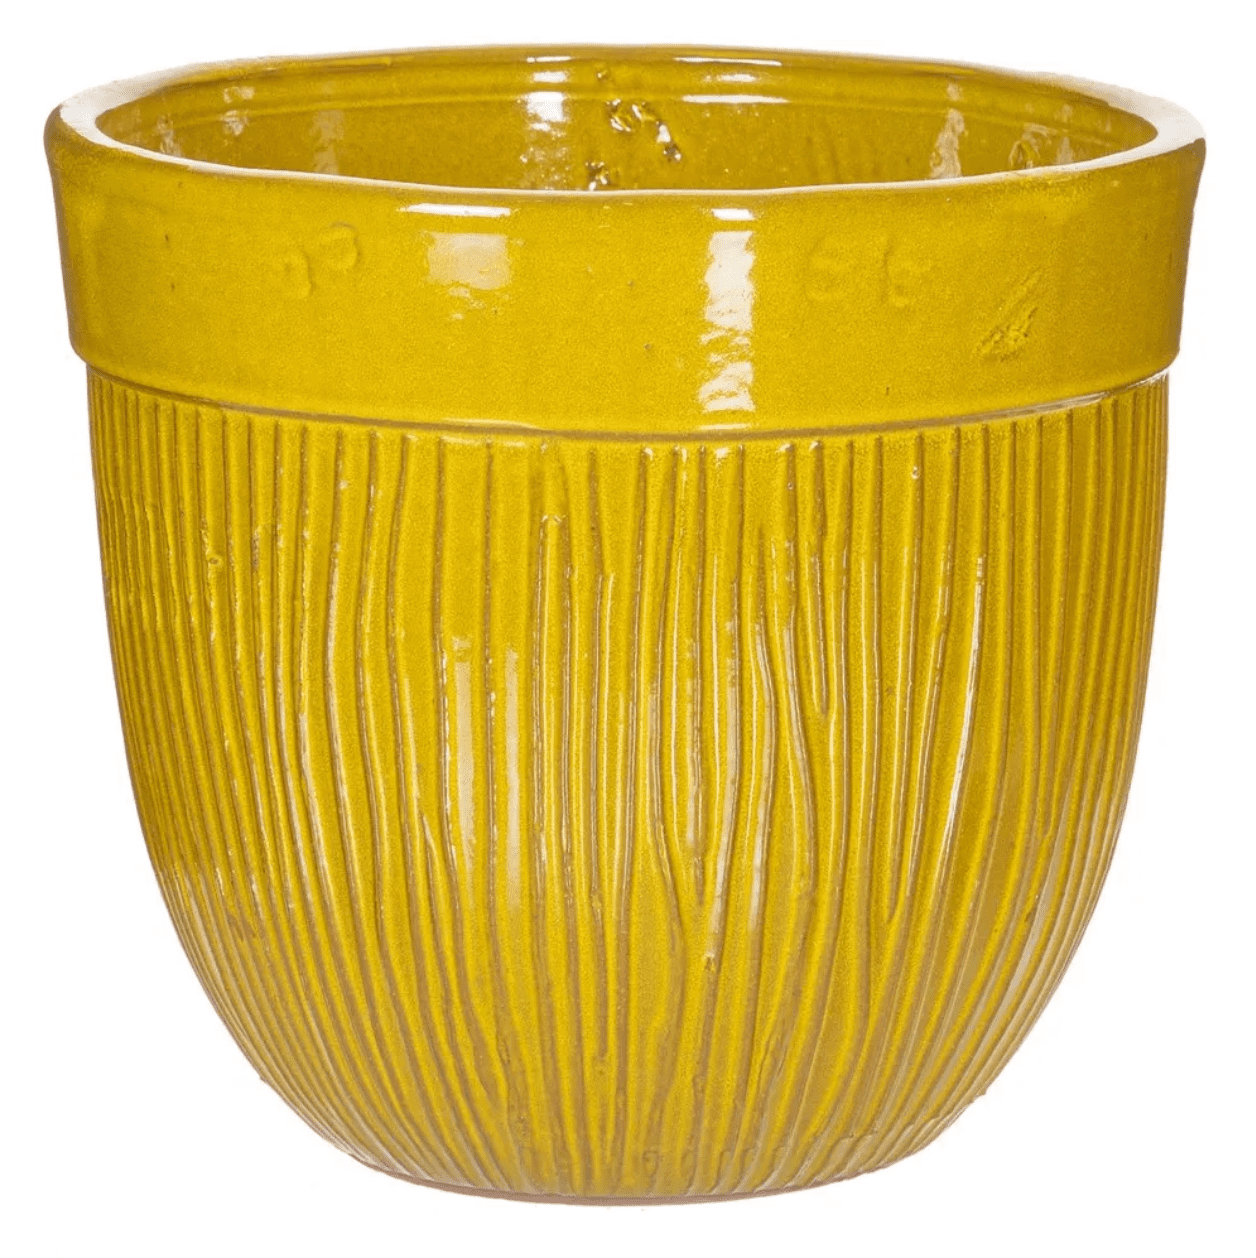 Vaso 38*35 cerâmica amarelo